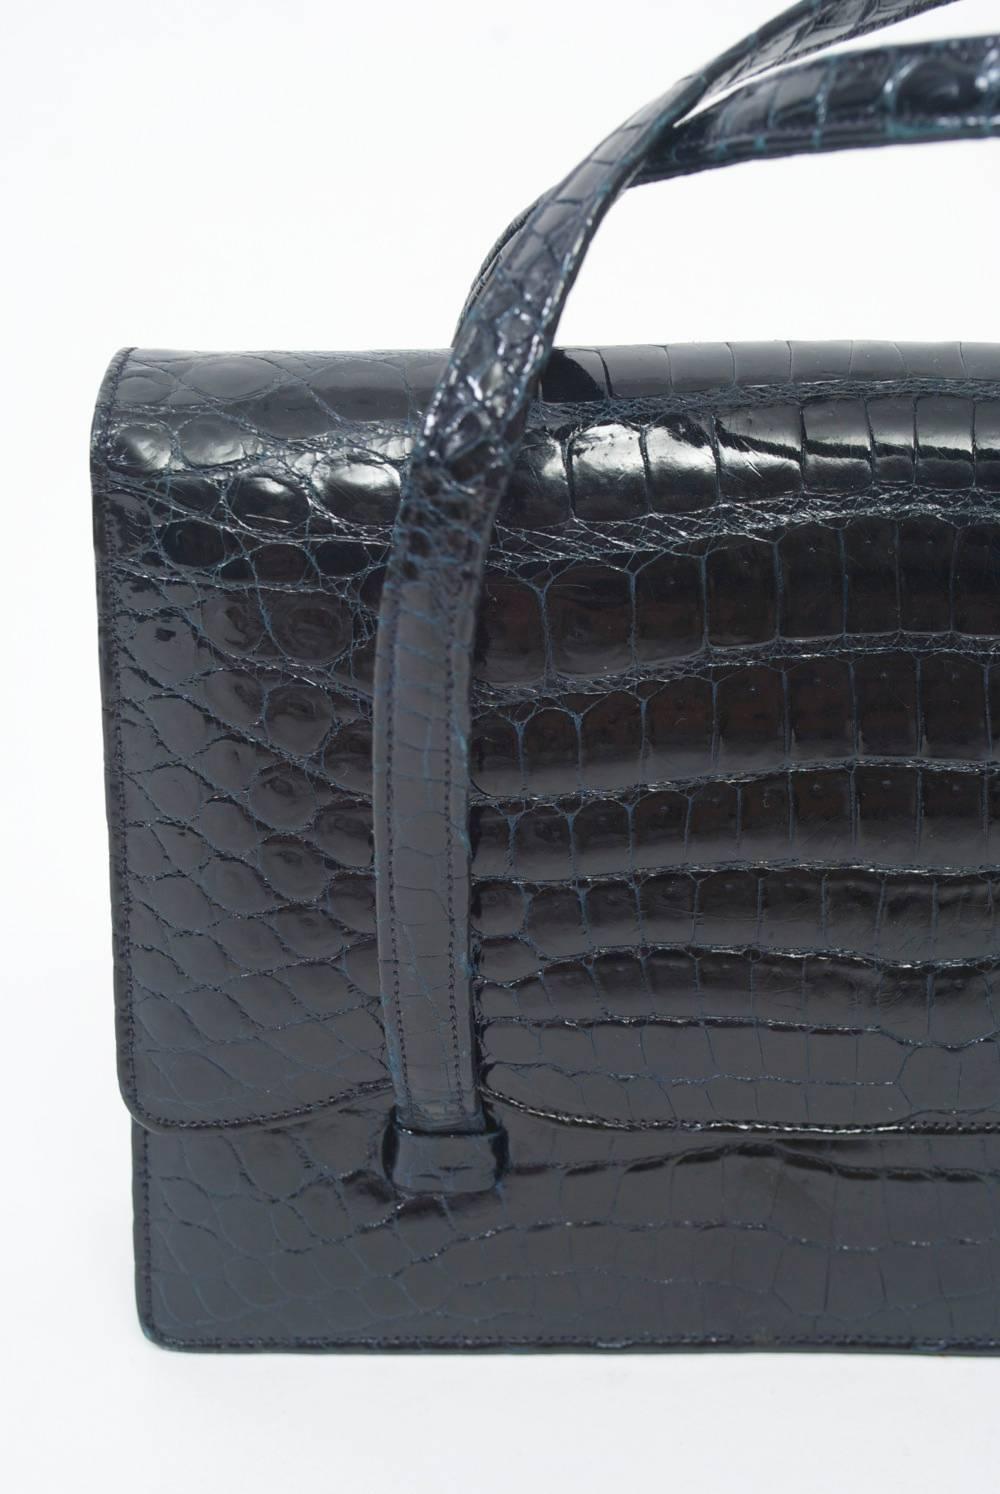 Kleine Krokodil-Handtasche aus den 1960er Jahren von Artbag in der Madison Avenue, NY. Sie hat einen Umschlag mit Schnappverschluss und zwei Griffe, die unter der Klappe befestigt werden. Innenausstattung aus schwarzem Leder mit Reißverschlusstasche